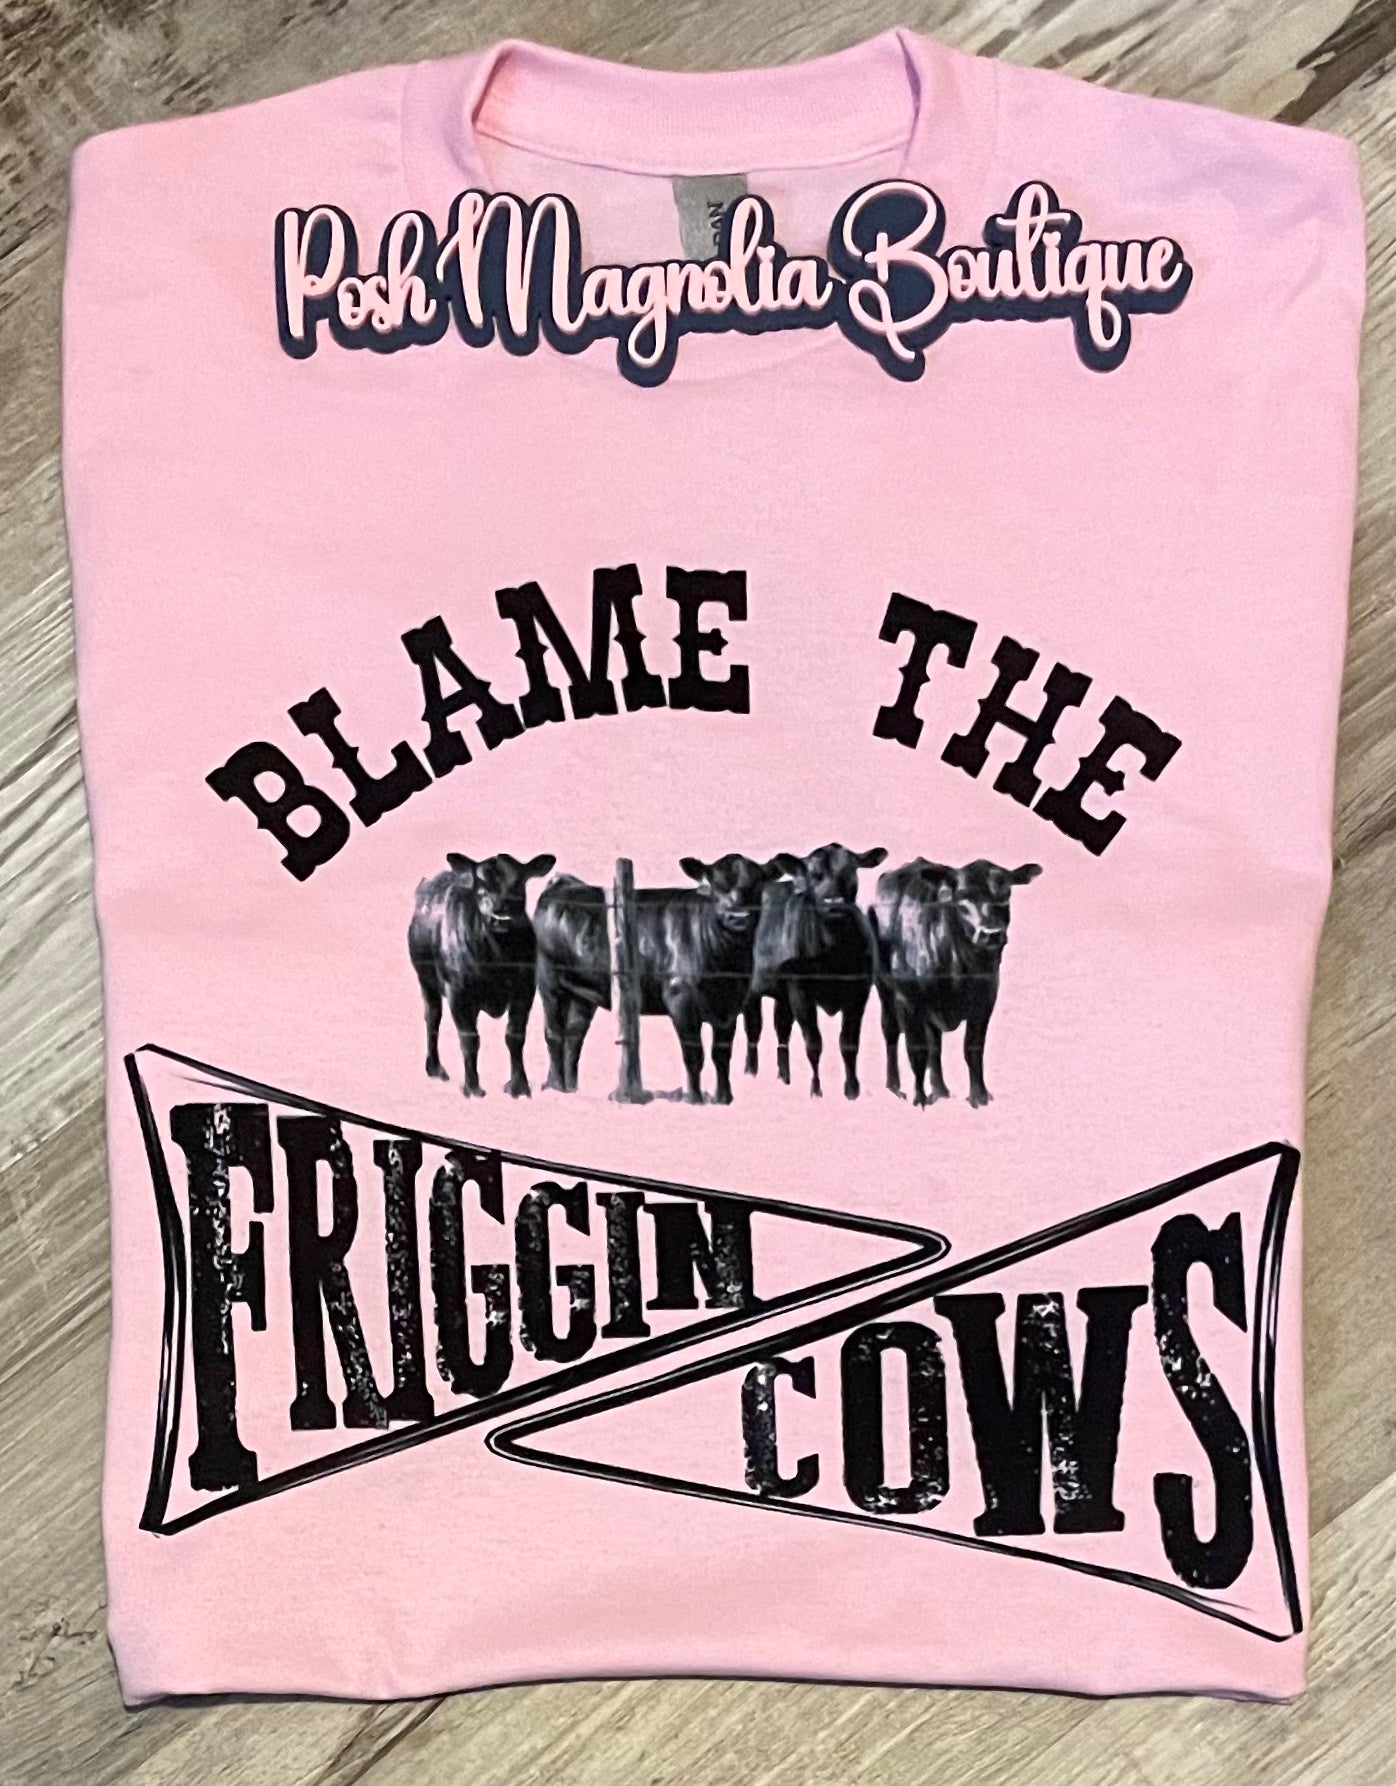 Blame the friggin cows